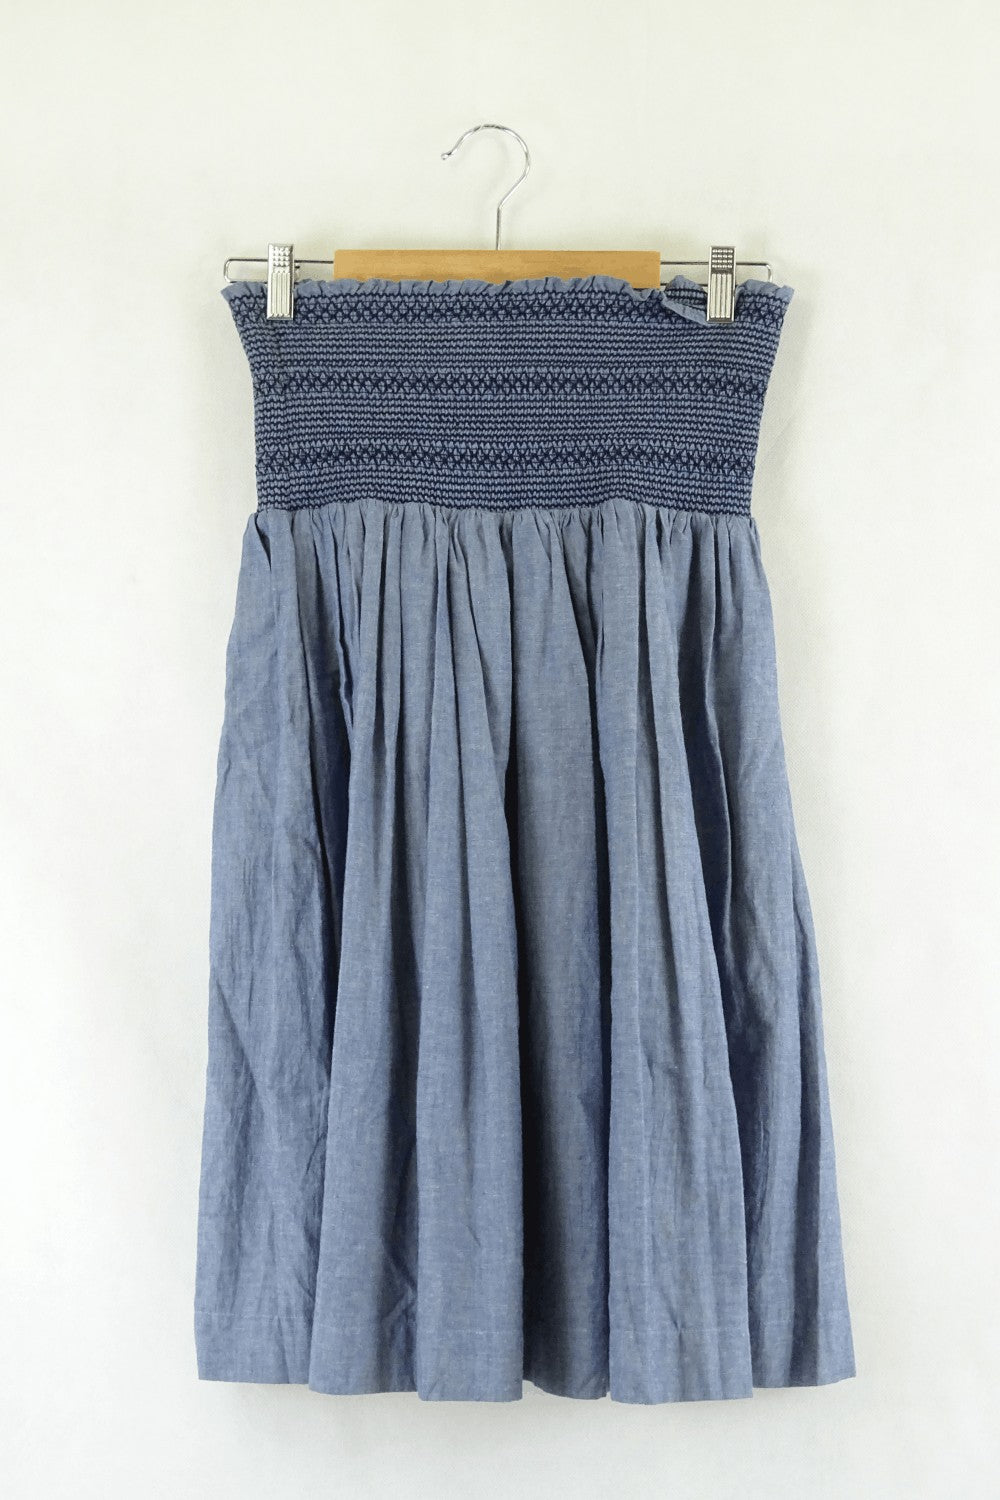 Gorman Blue Shirred Waist Skirt 6